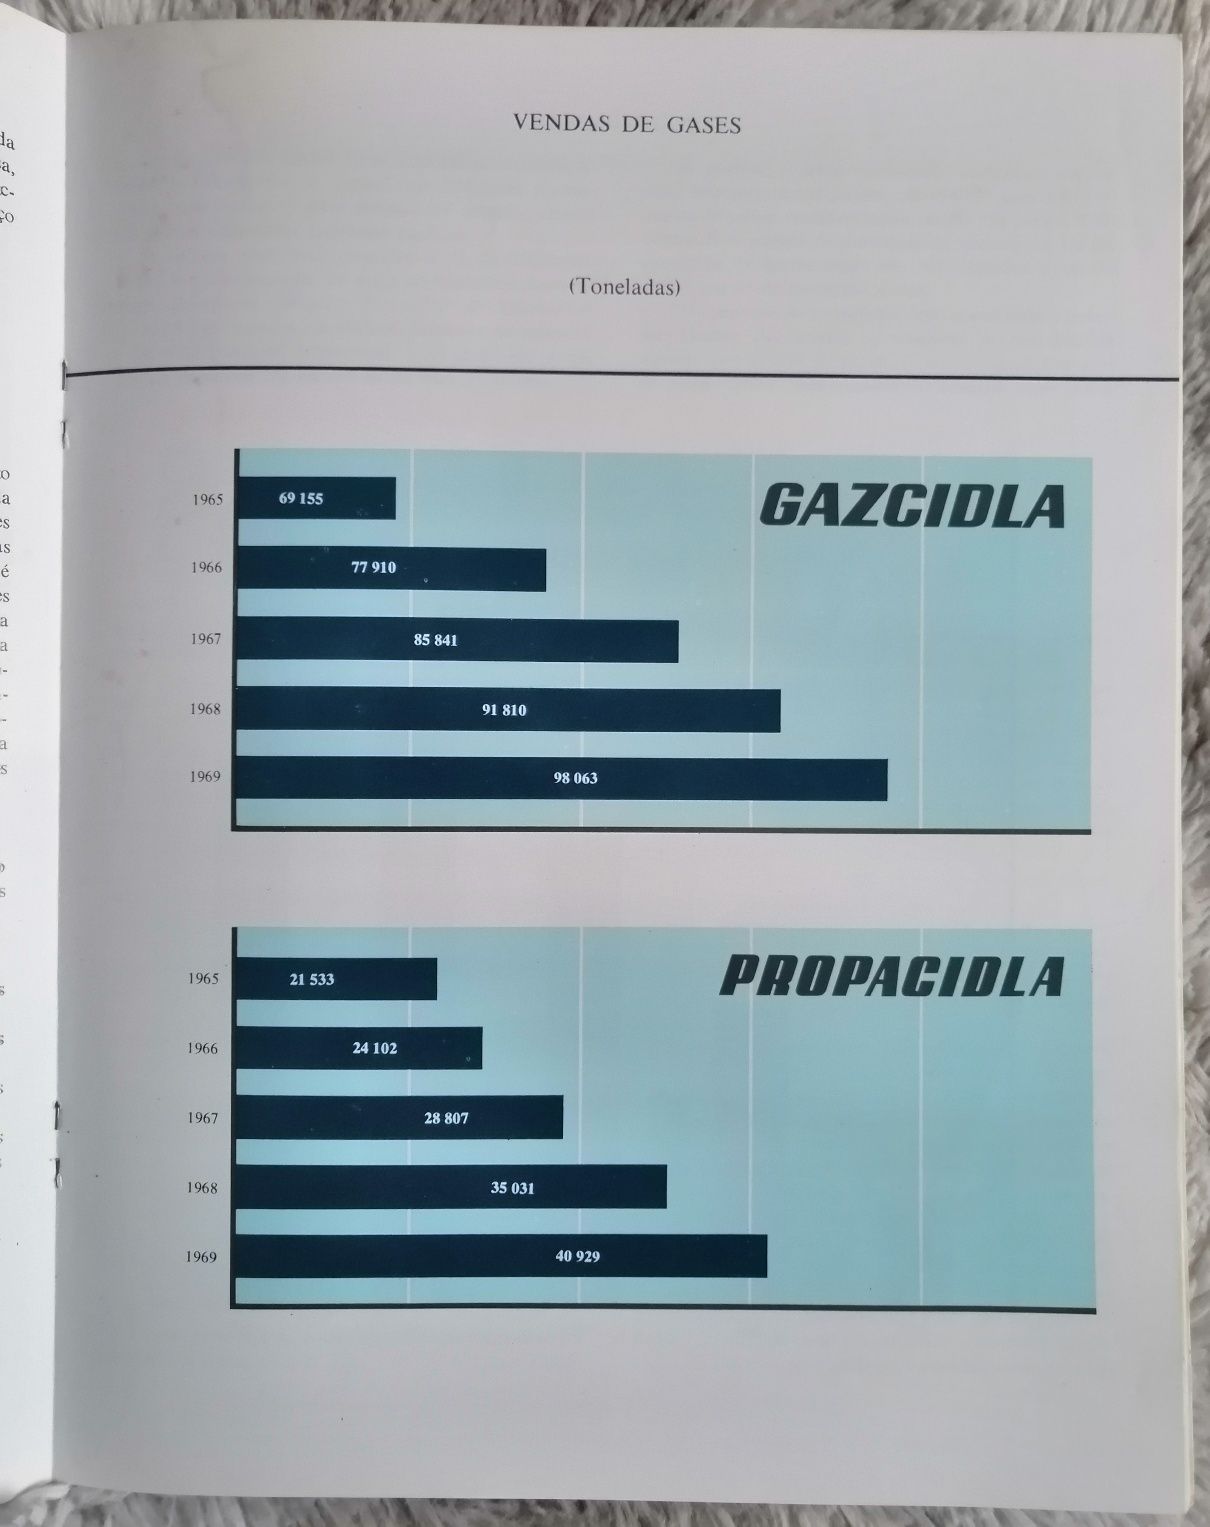 Brochura da CIDLA - Combustíveis Industriais e Domésticos SARL 1969